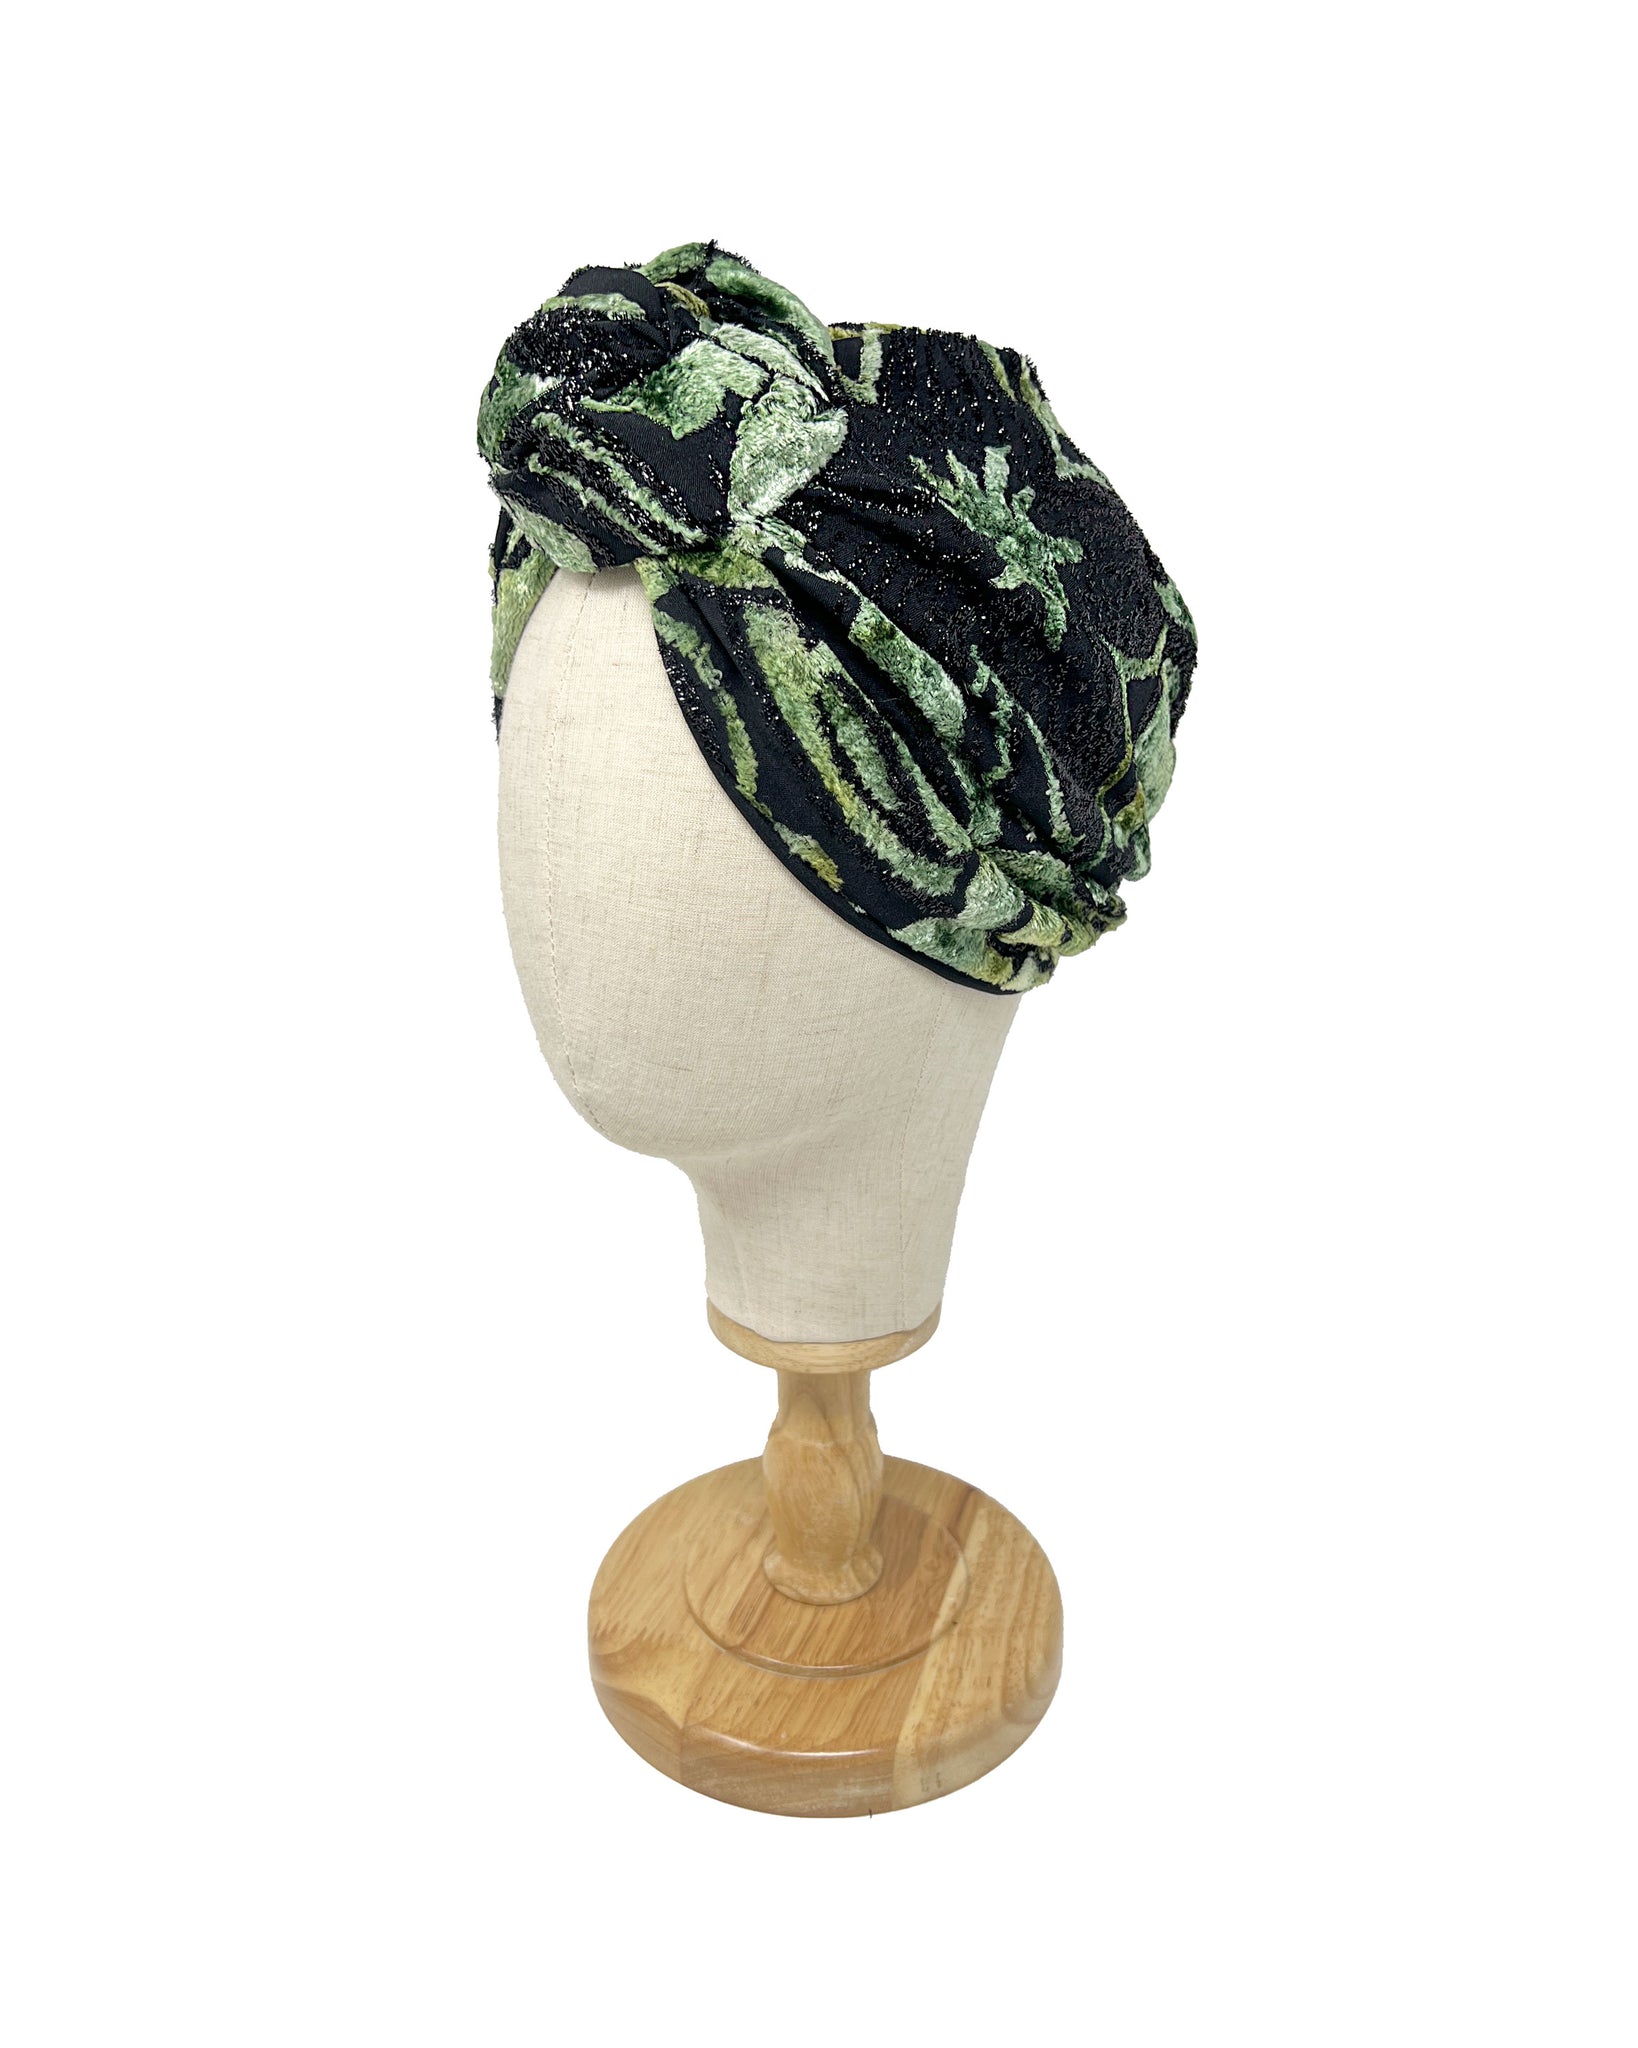 Green and black velvet silk devoré "Rachel" turban